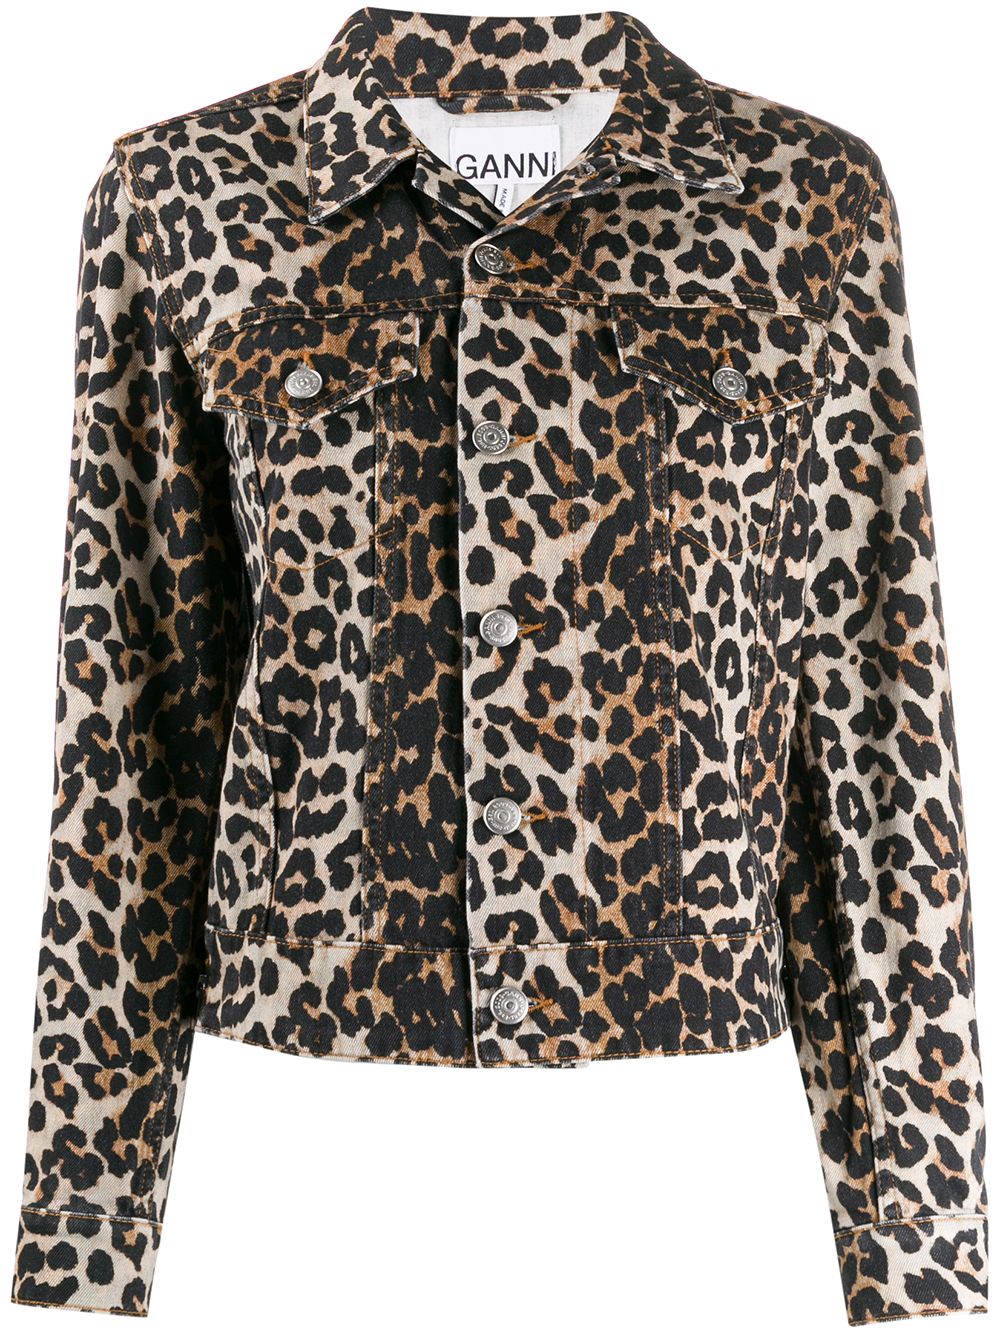 фото Ganni джинсовая куртка с леопардовым принтом